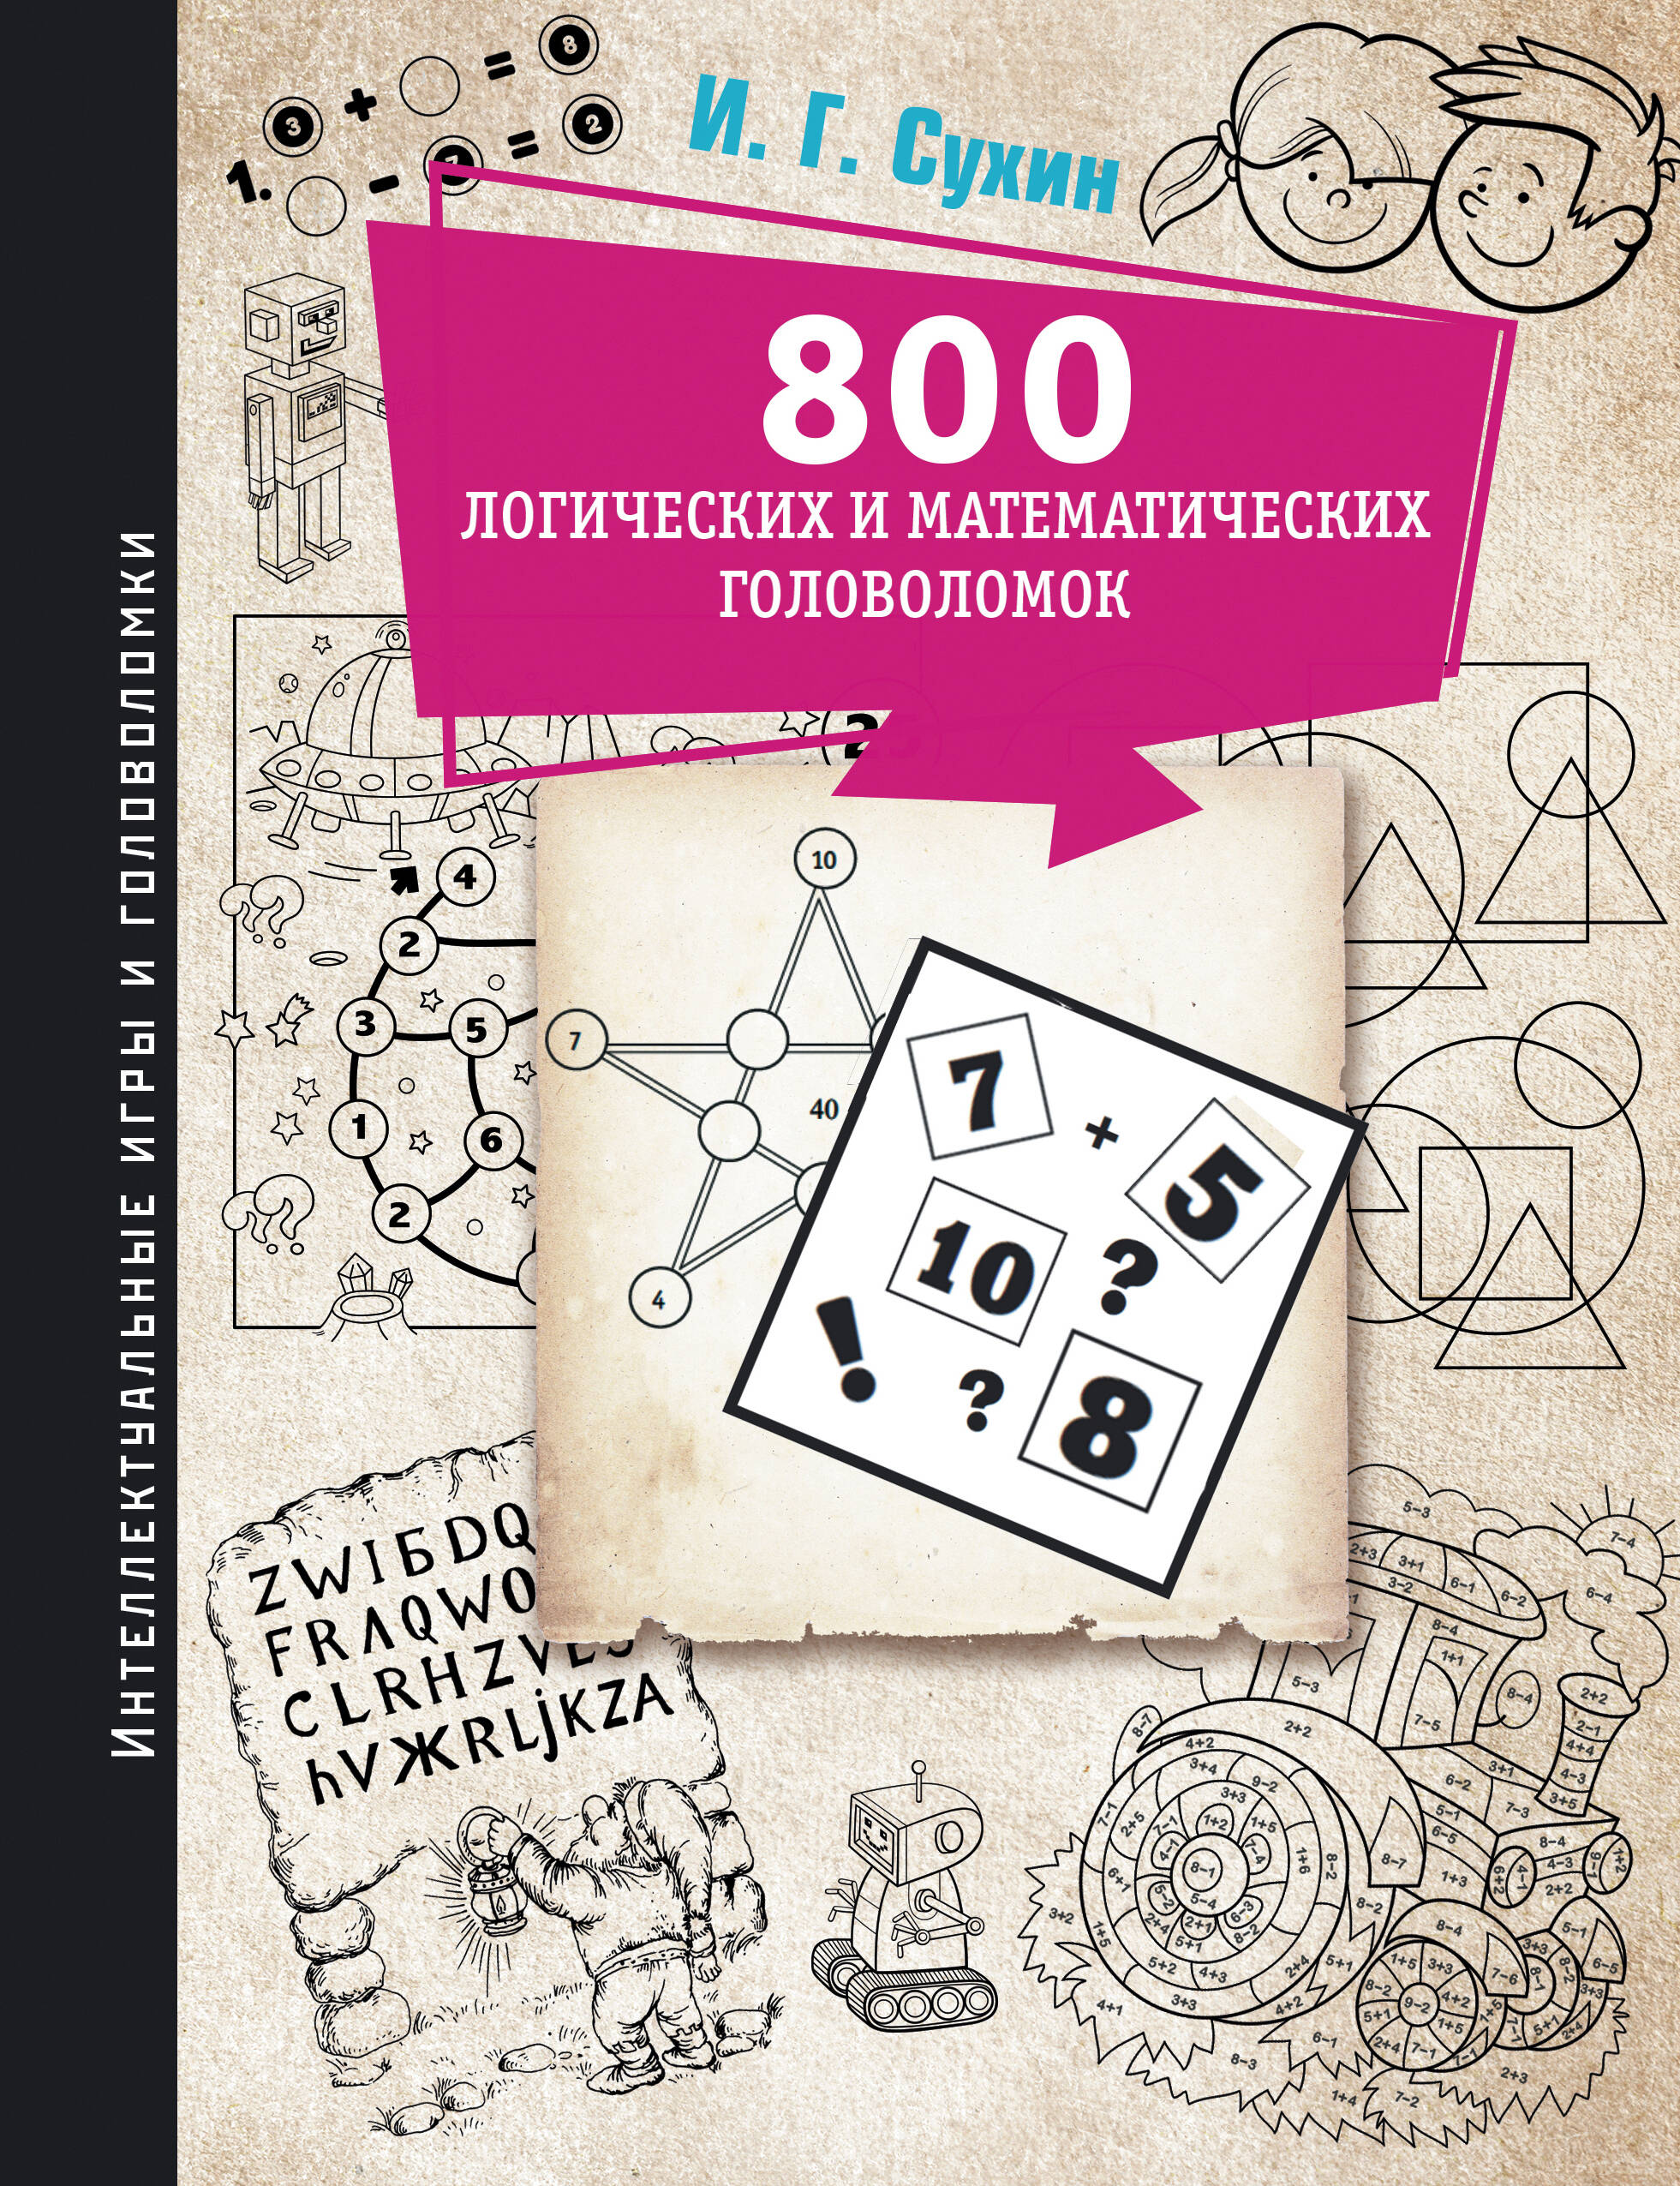 800 логических и математических головоломок мухин игорь георгиевич забавные тосты по поводу и просто